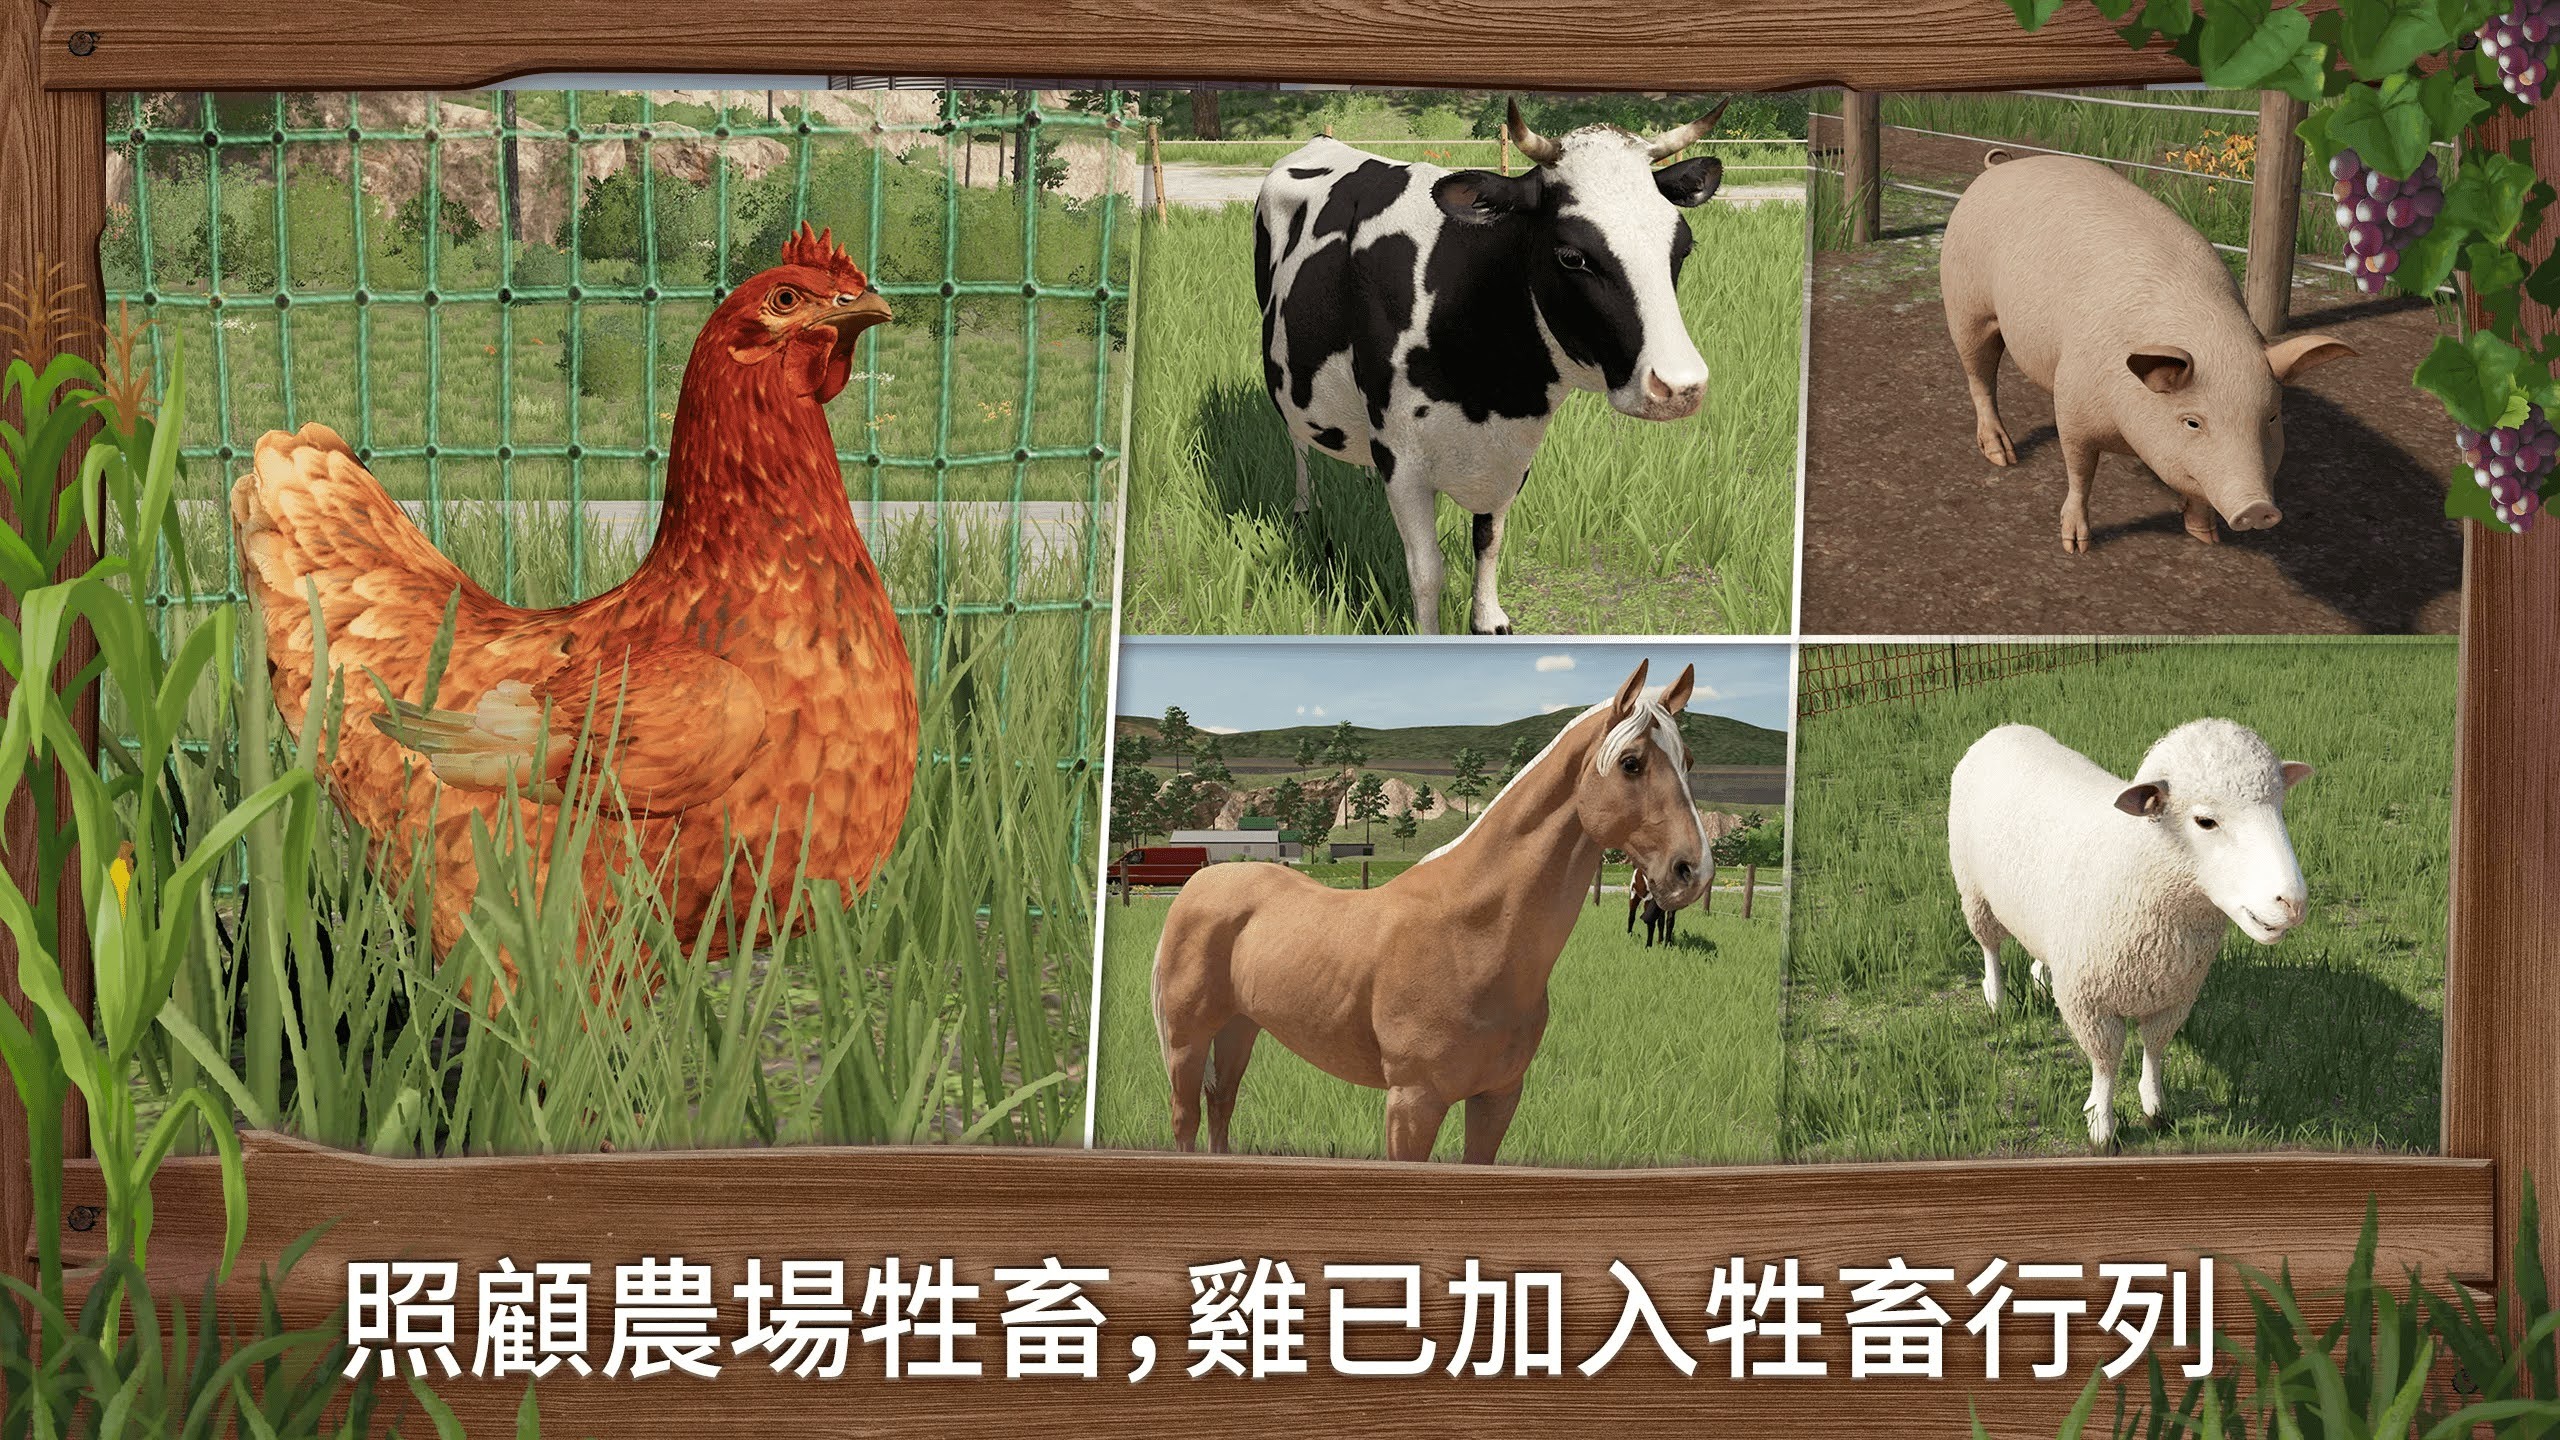 壯大自己的農業王國《模擬農場23》公開首支實機預告